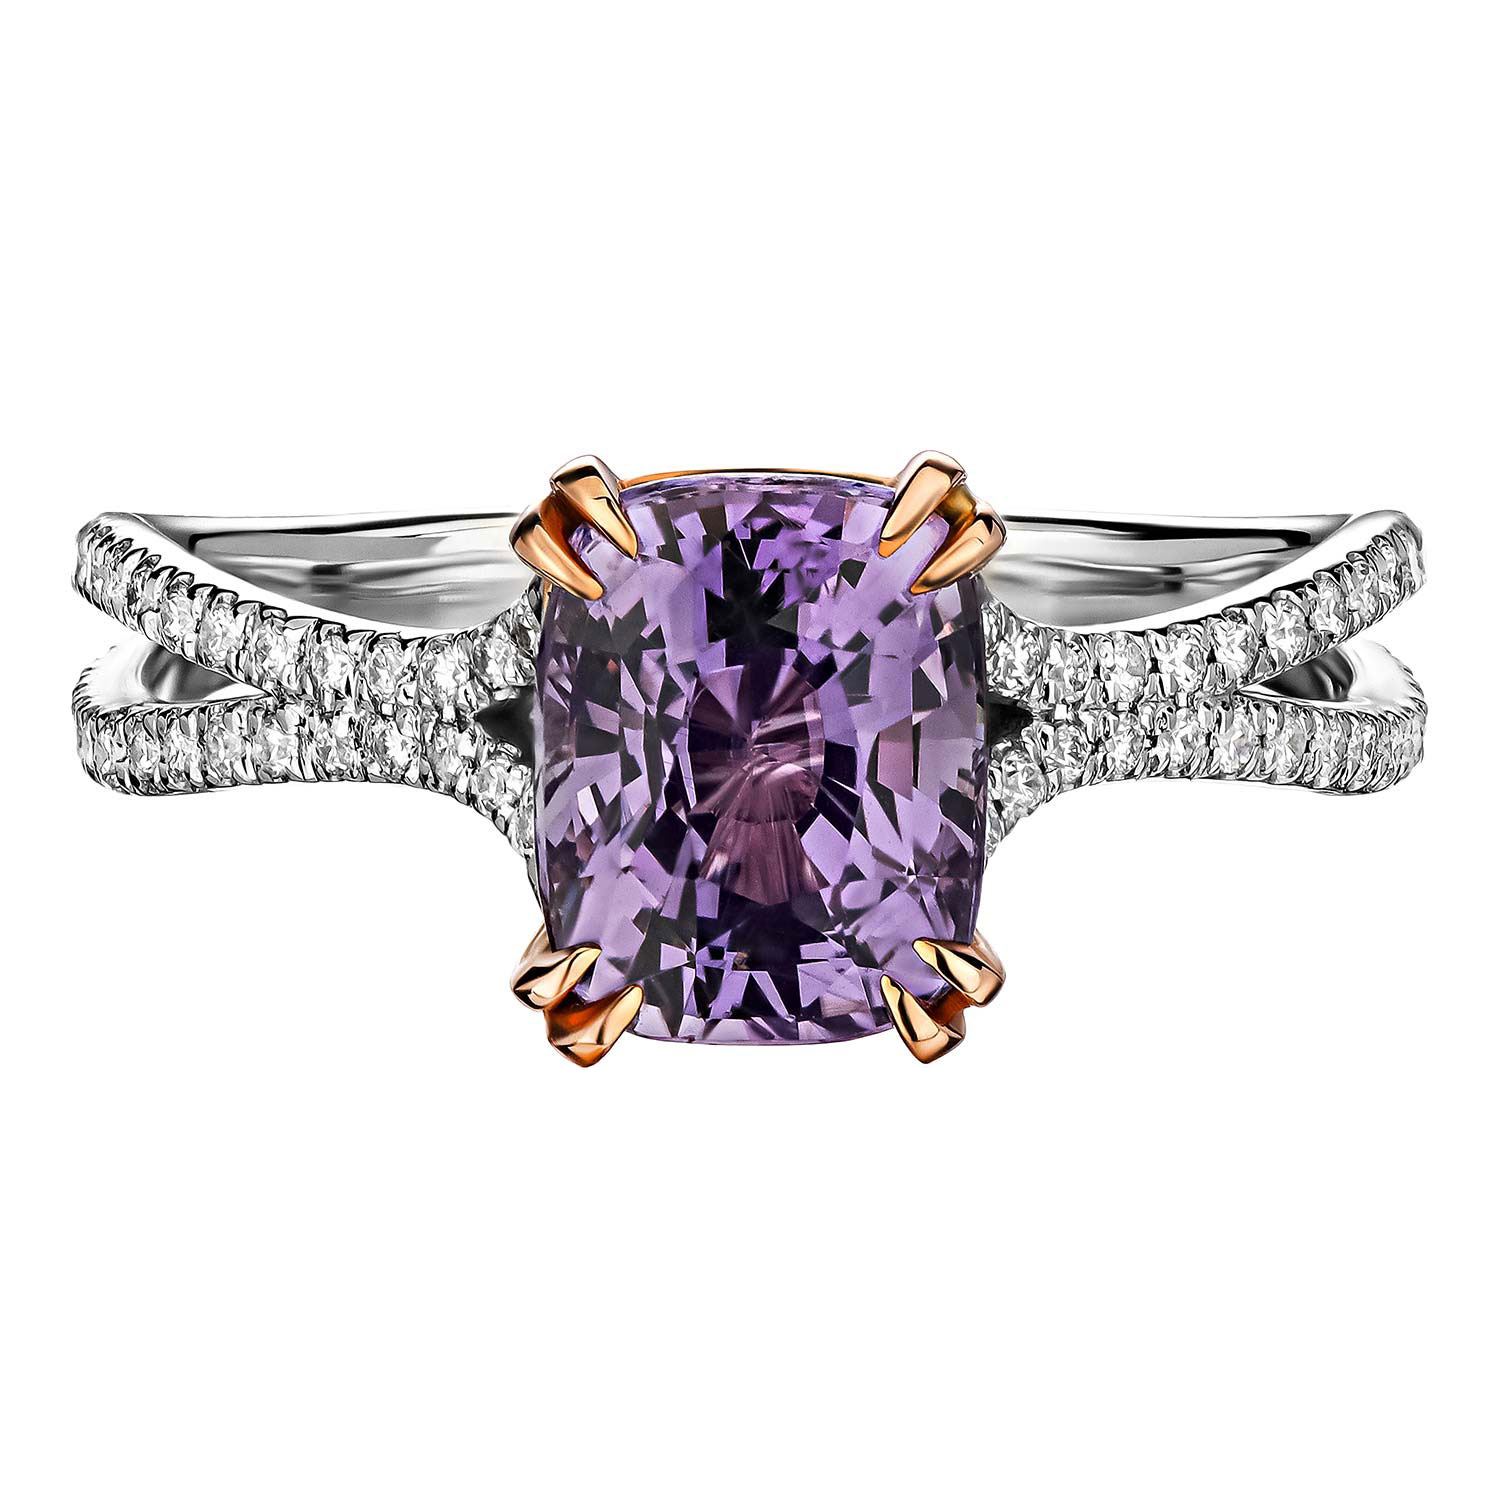 Золотое кольцо Esora esora-14 c бриллиантами, шпинелью